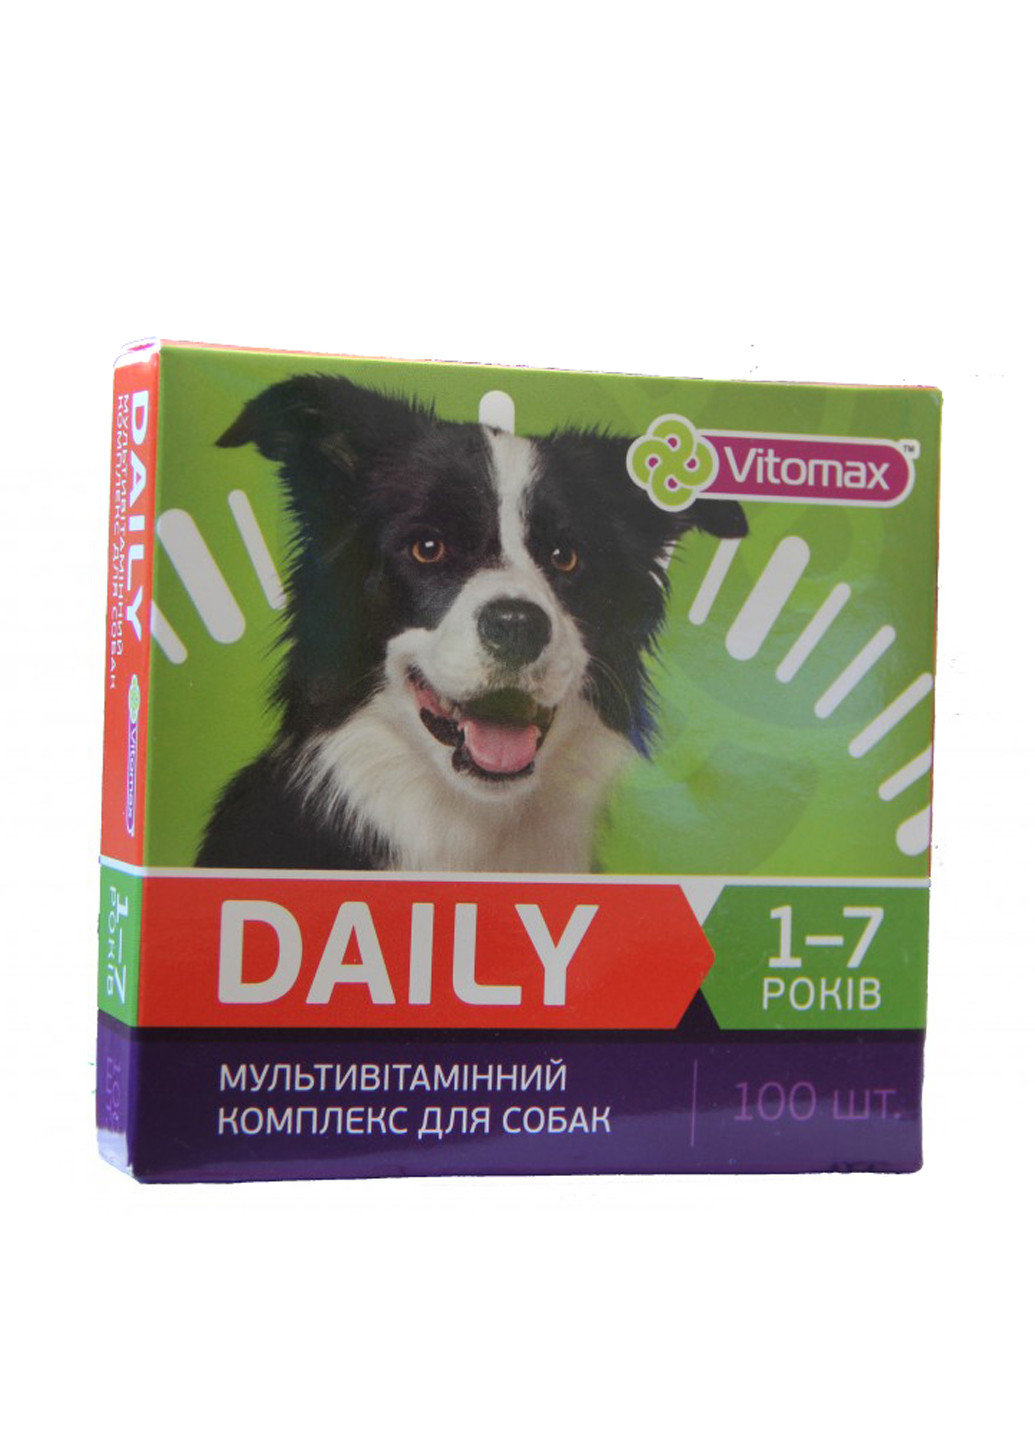 Витамины для собак DAILY (1-7 л.), 100 г Vitomax (76393510)